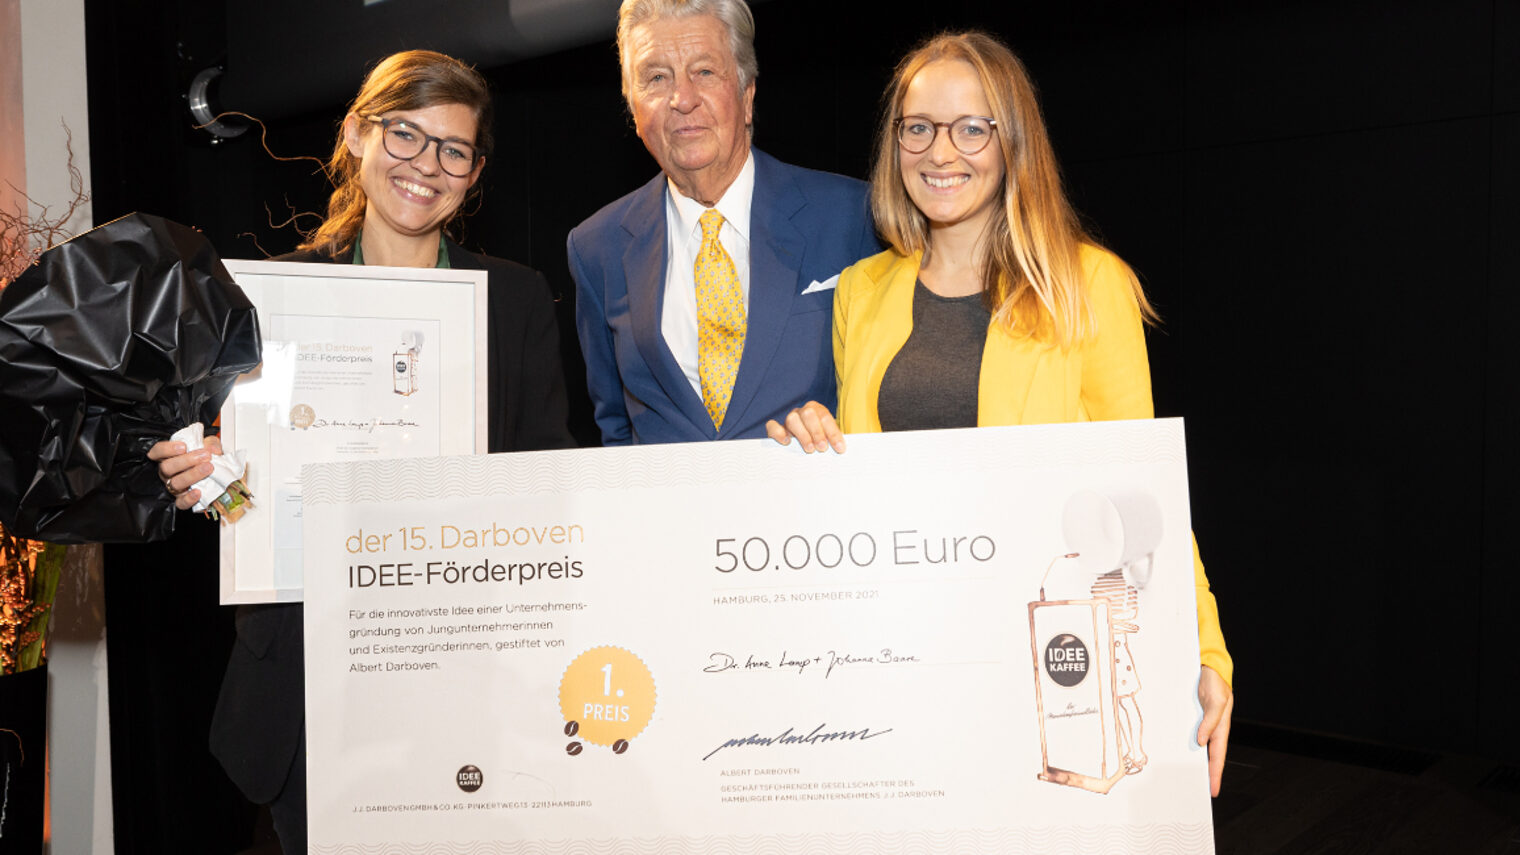  Preisträgerinnen beim IDEE-Förderpreis sind Dr. Anne Lamp und Johanna Baare